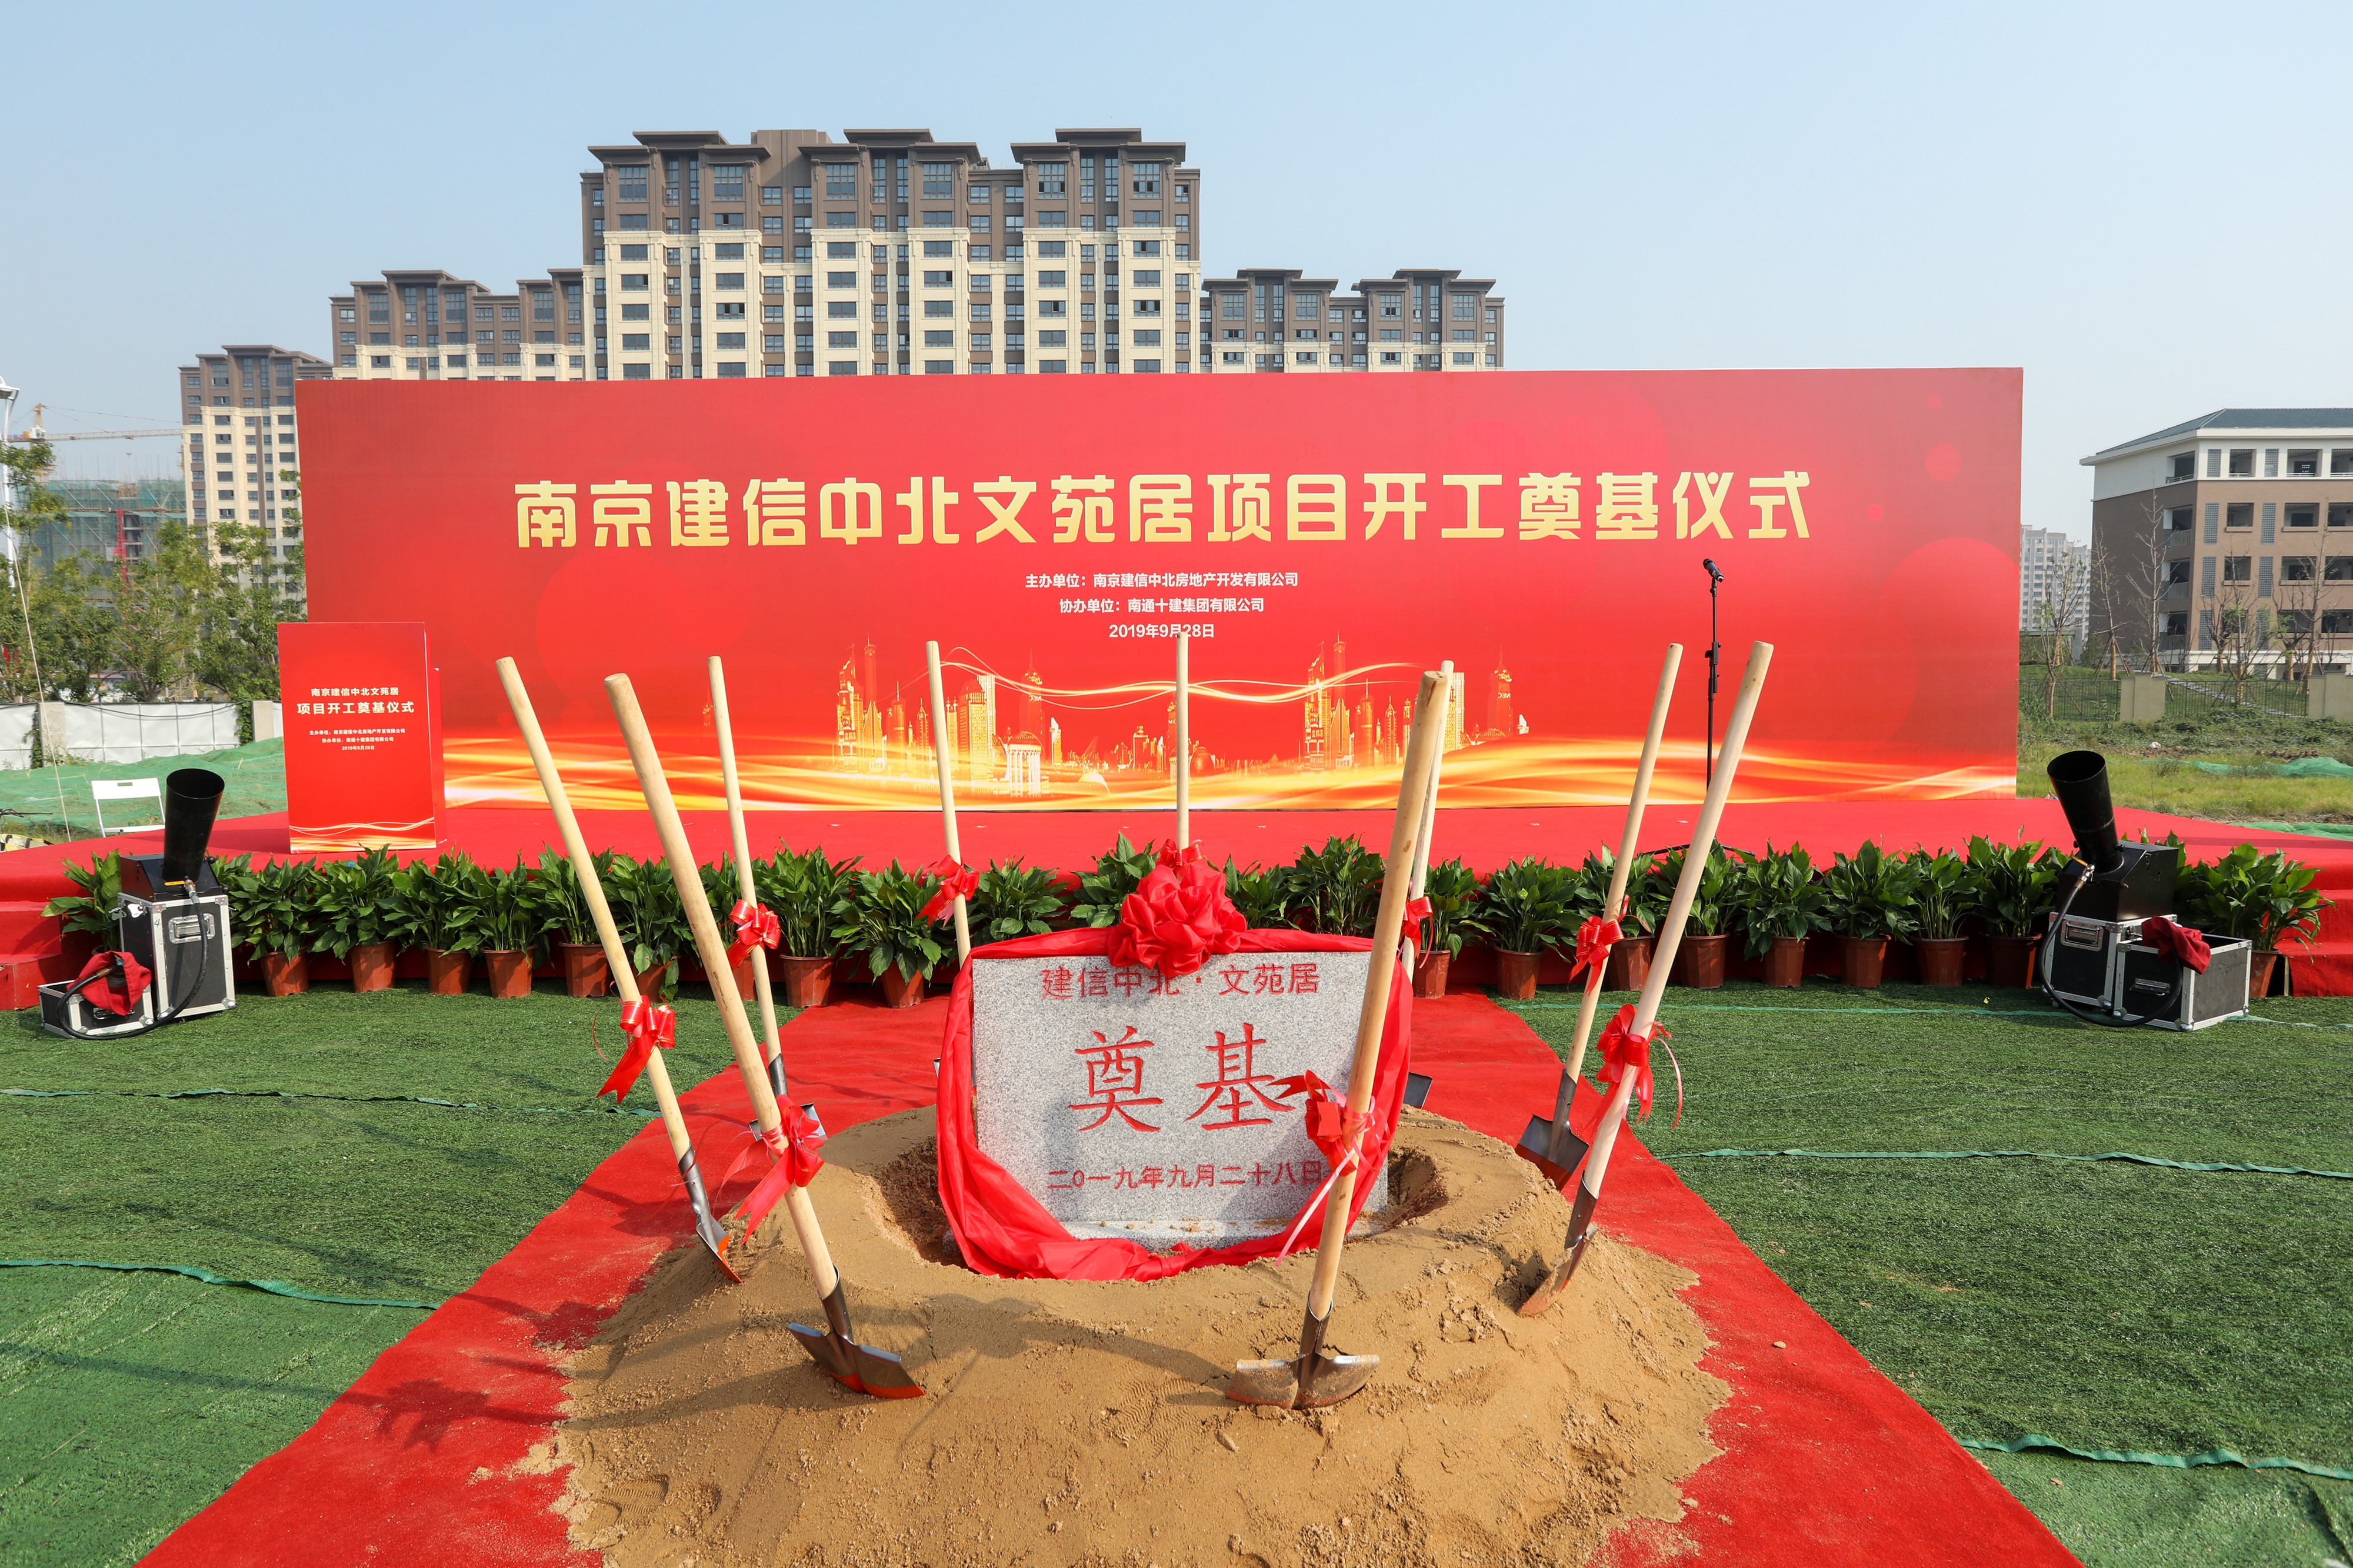 我公司承建的南京中北文苑居项目顺利开工